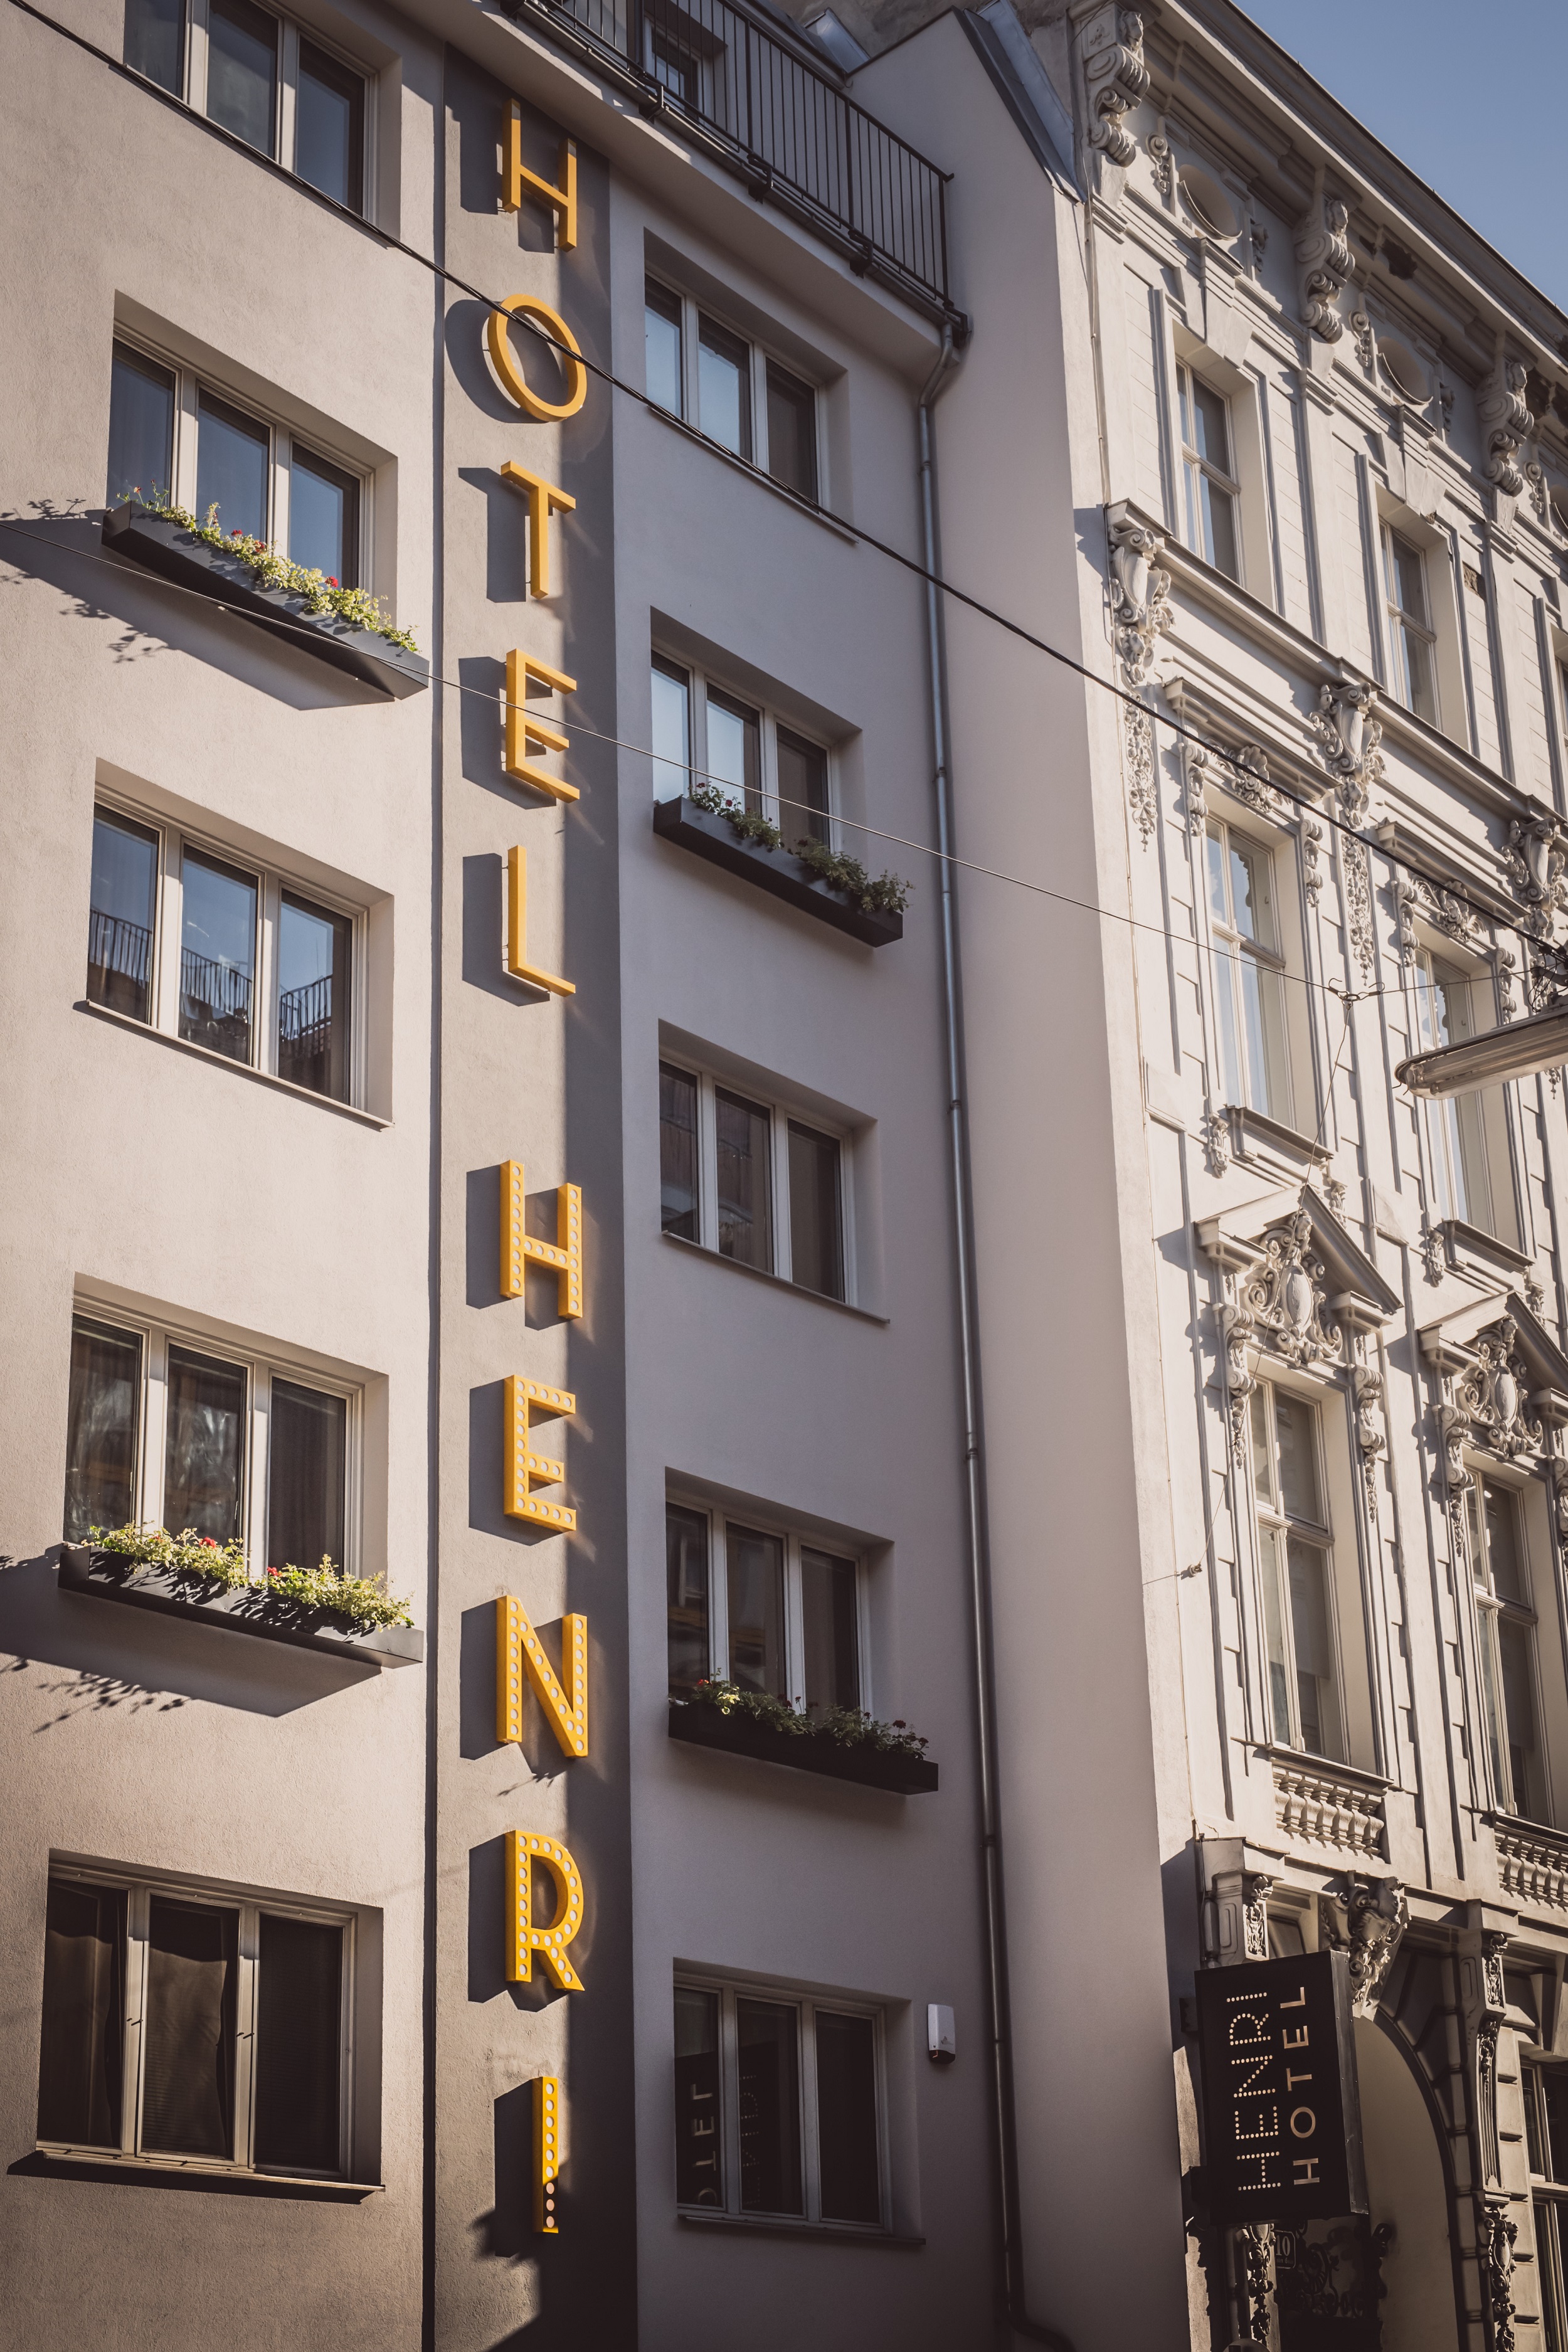 HENRI Hotel, Wien.